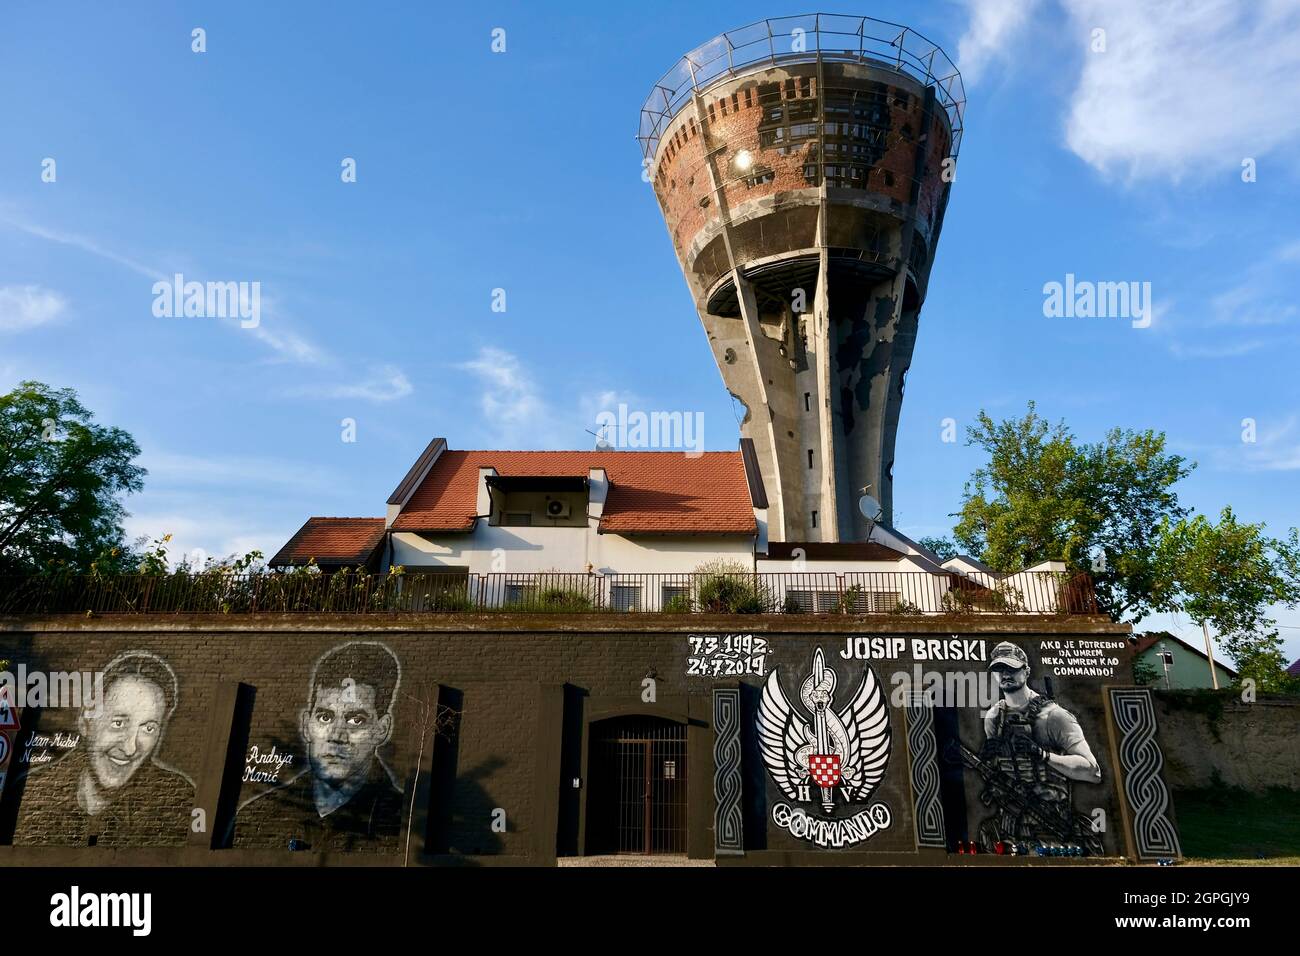 Croatie, Slavonie, Vukovar, le château d'eau, symbole de la résistance de la ville contre l'ennemi pendant le siège de Vukovar en 1991, a frappé plus de 600 fois en 3 mois, maintenant un mémorial, la fresque des soldats français Jean-Michel Nicolier, volontaire, Andrija Maric et Josip Briski, est mort en Afghanistan en 2019 Banque D'Images